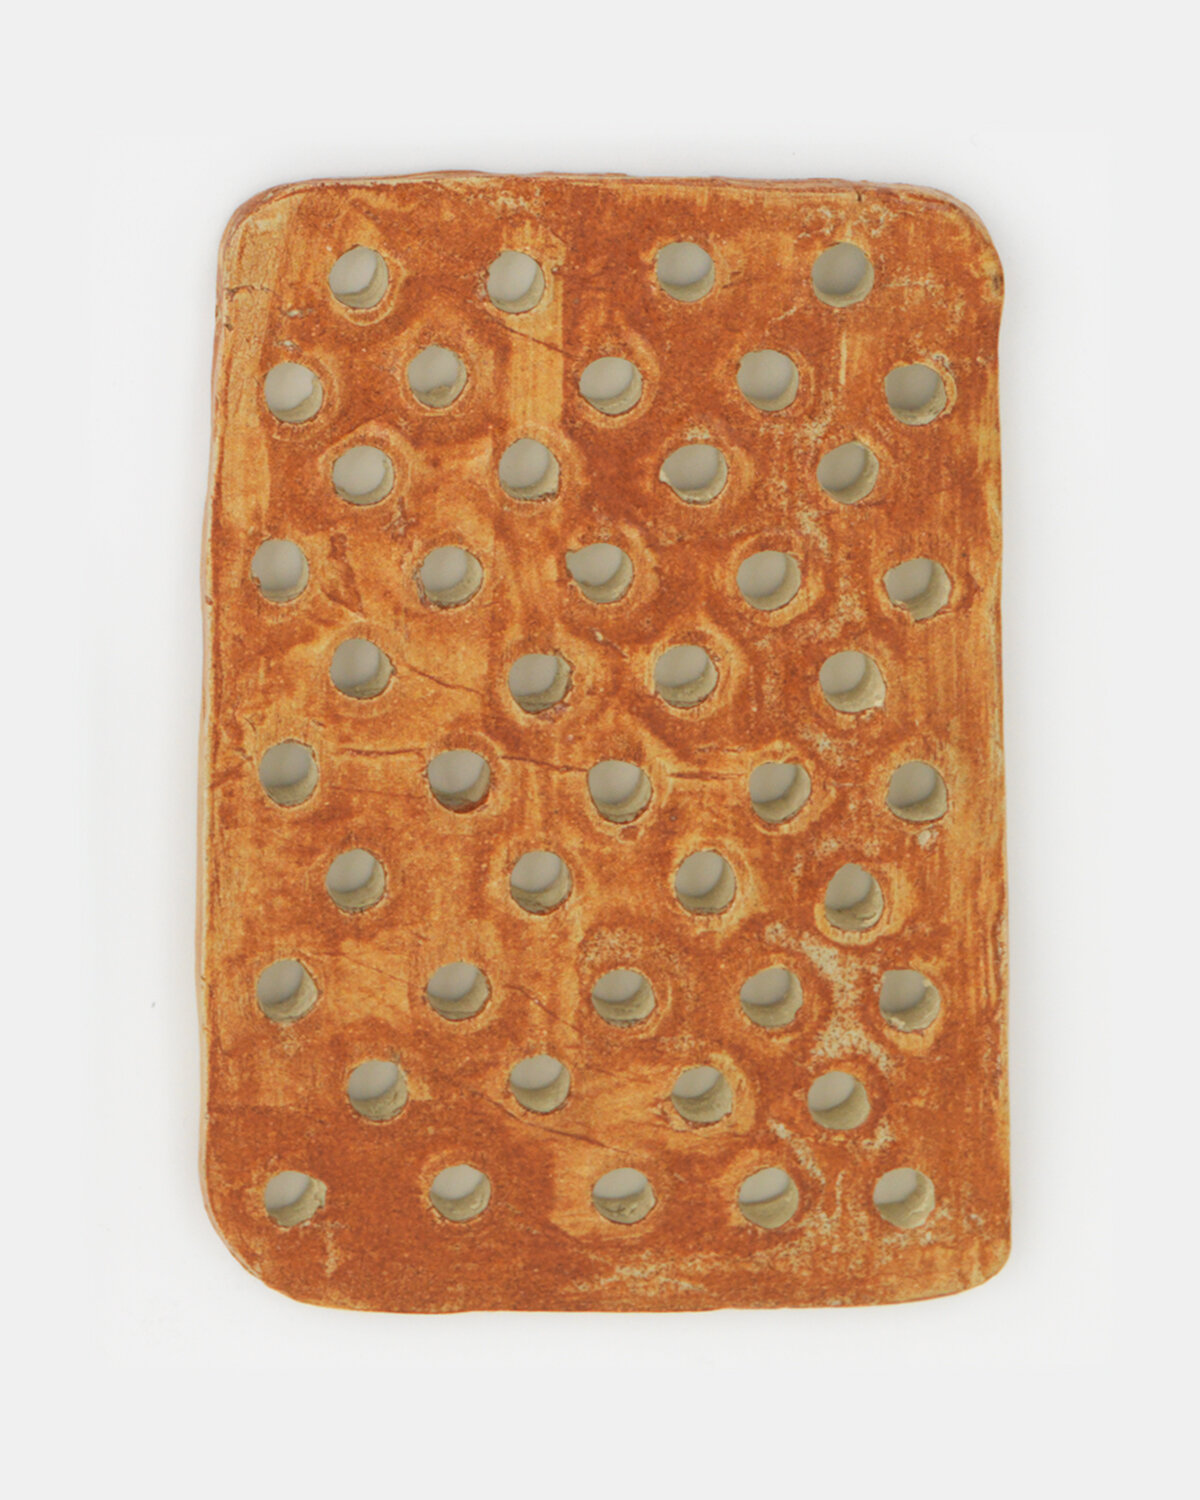   Orange Rectangular Cracker   Ceramic 5 x 3 inches   